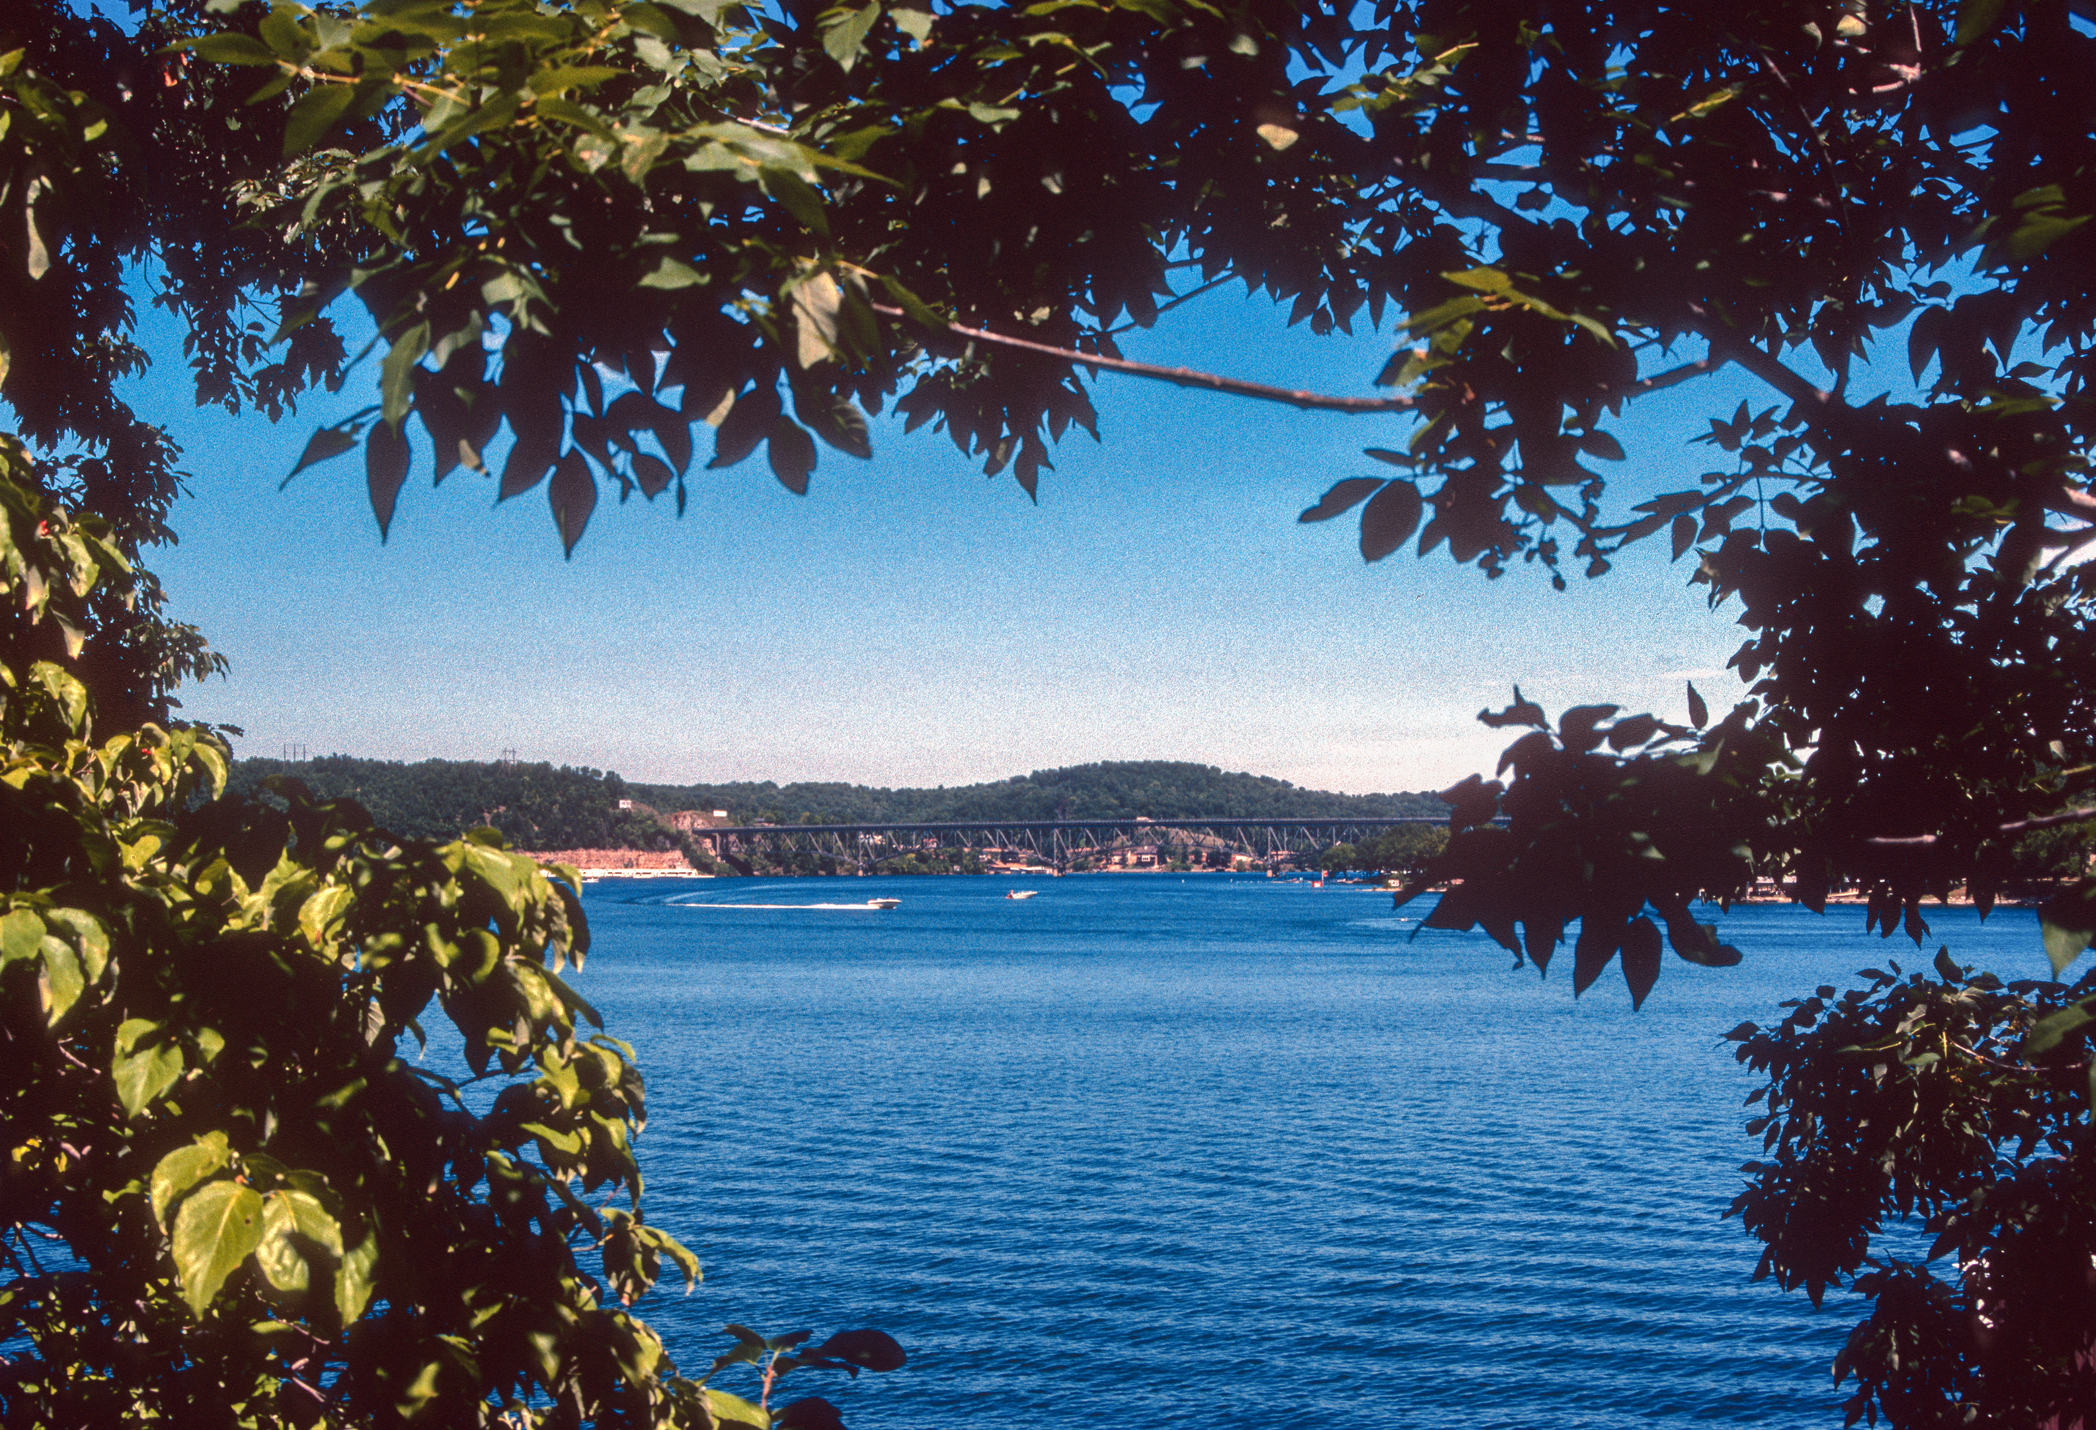 Il lago degli Ozarks - Il lago visto attraverso gli alberi 1987